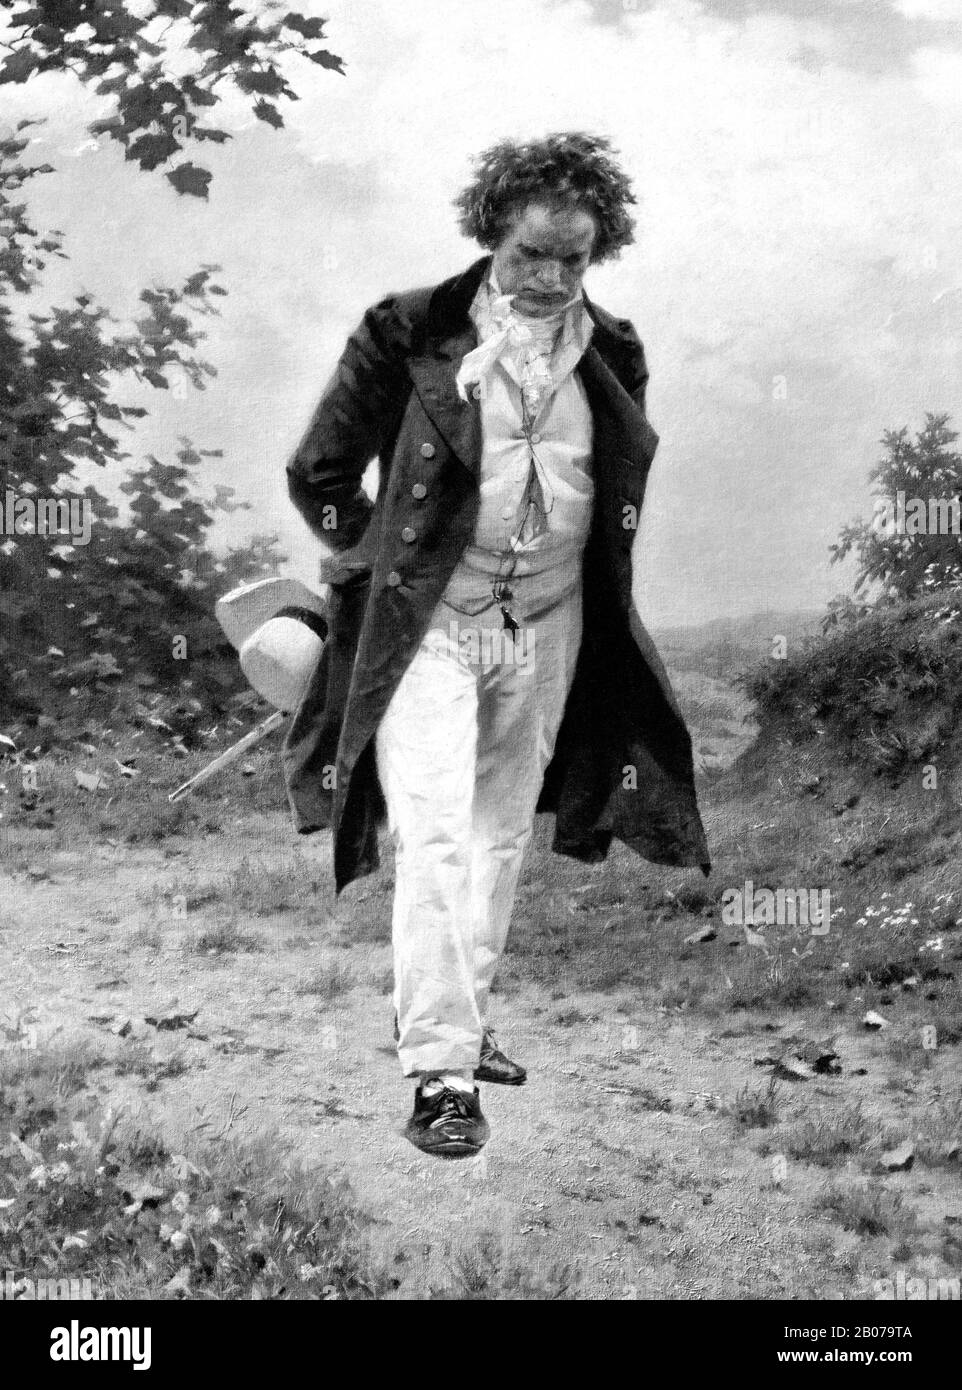 Immagine d'epoca raffigurante il compositore e pianista tedesco Ludwig van Beethoven (1770 – 1827) con una passeggiata nella natura. Dettagli da una stampa del 1910 circa di Berlino Photographic Company basata su un dipinto di Julius Schmid. Foto Stock